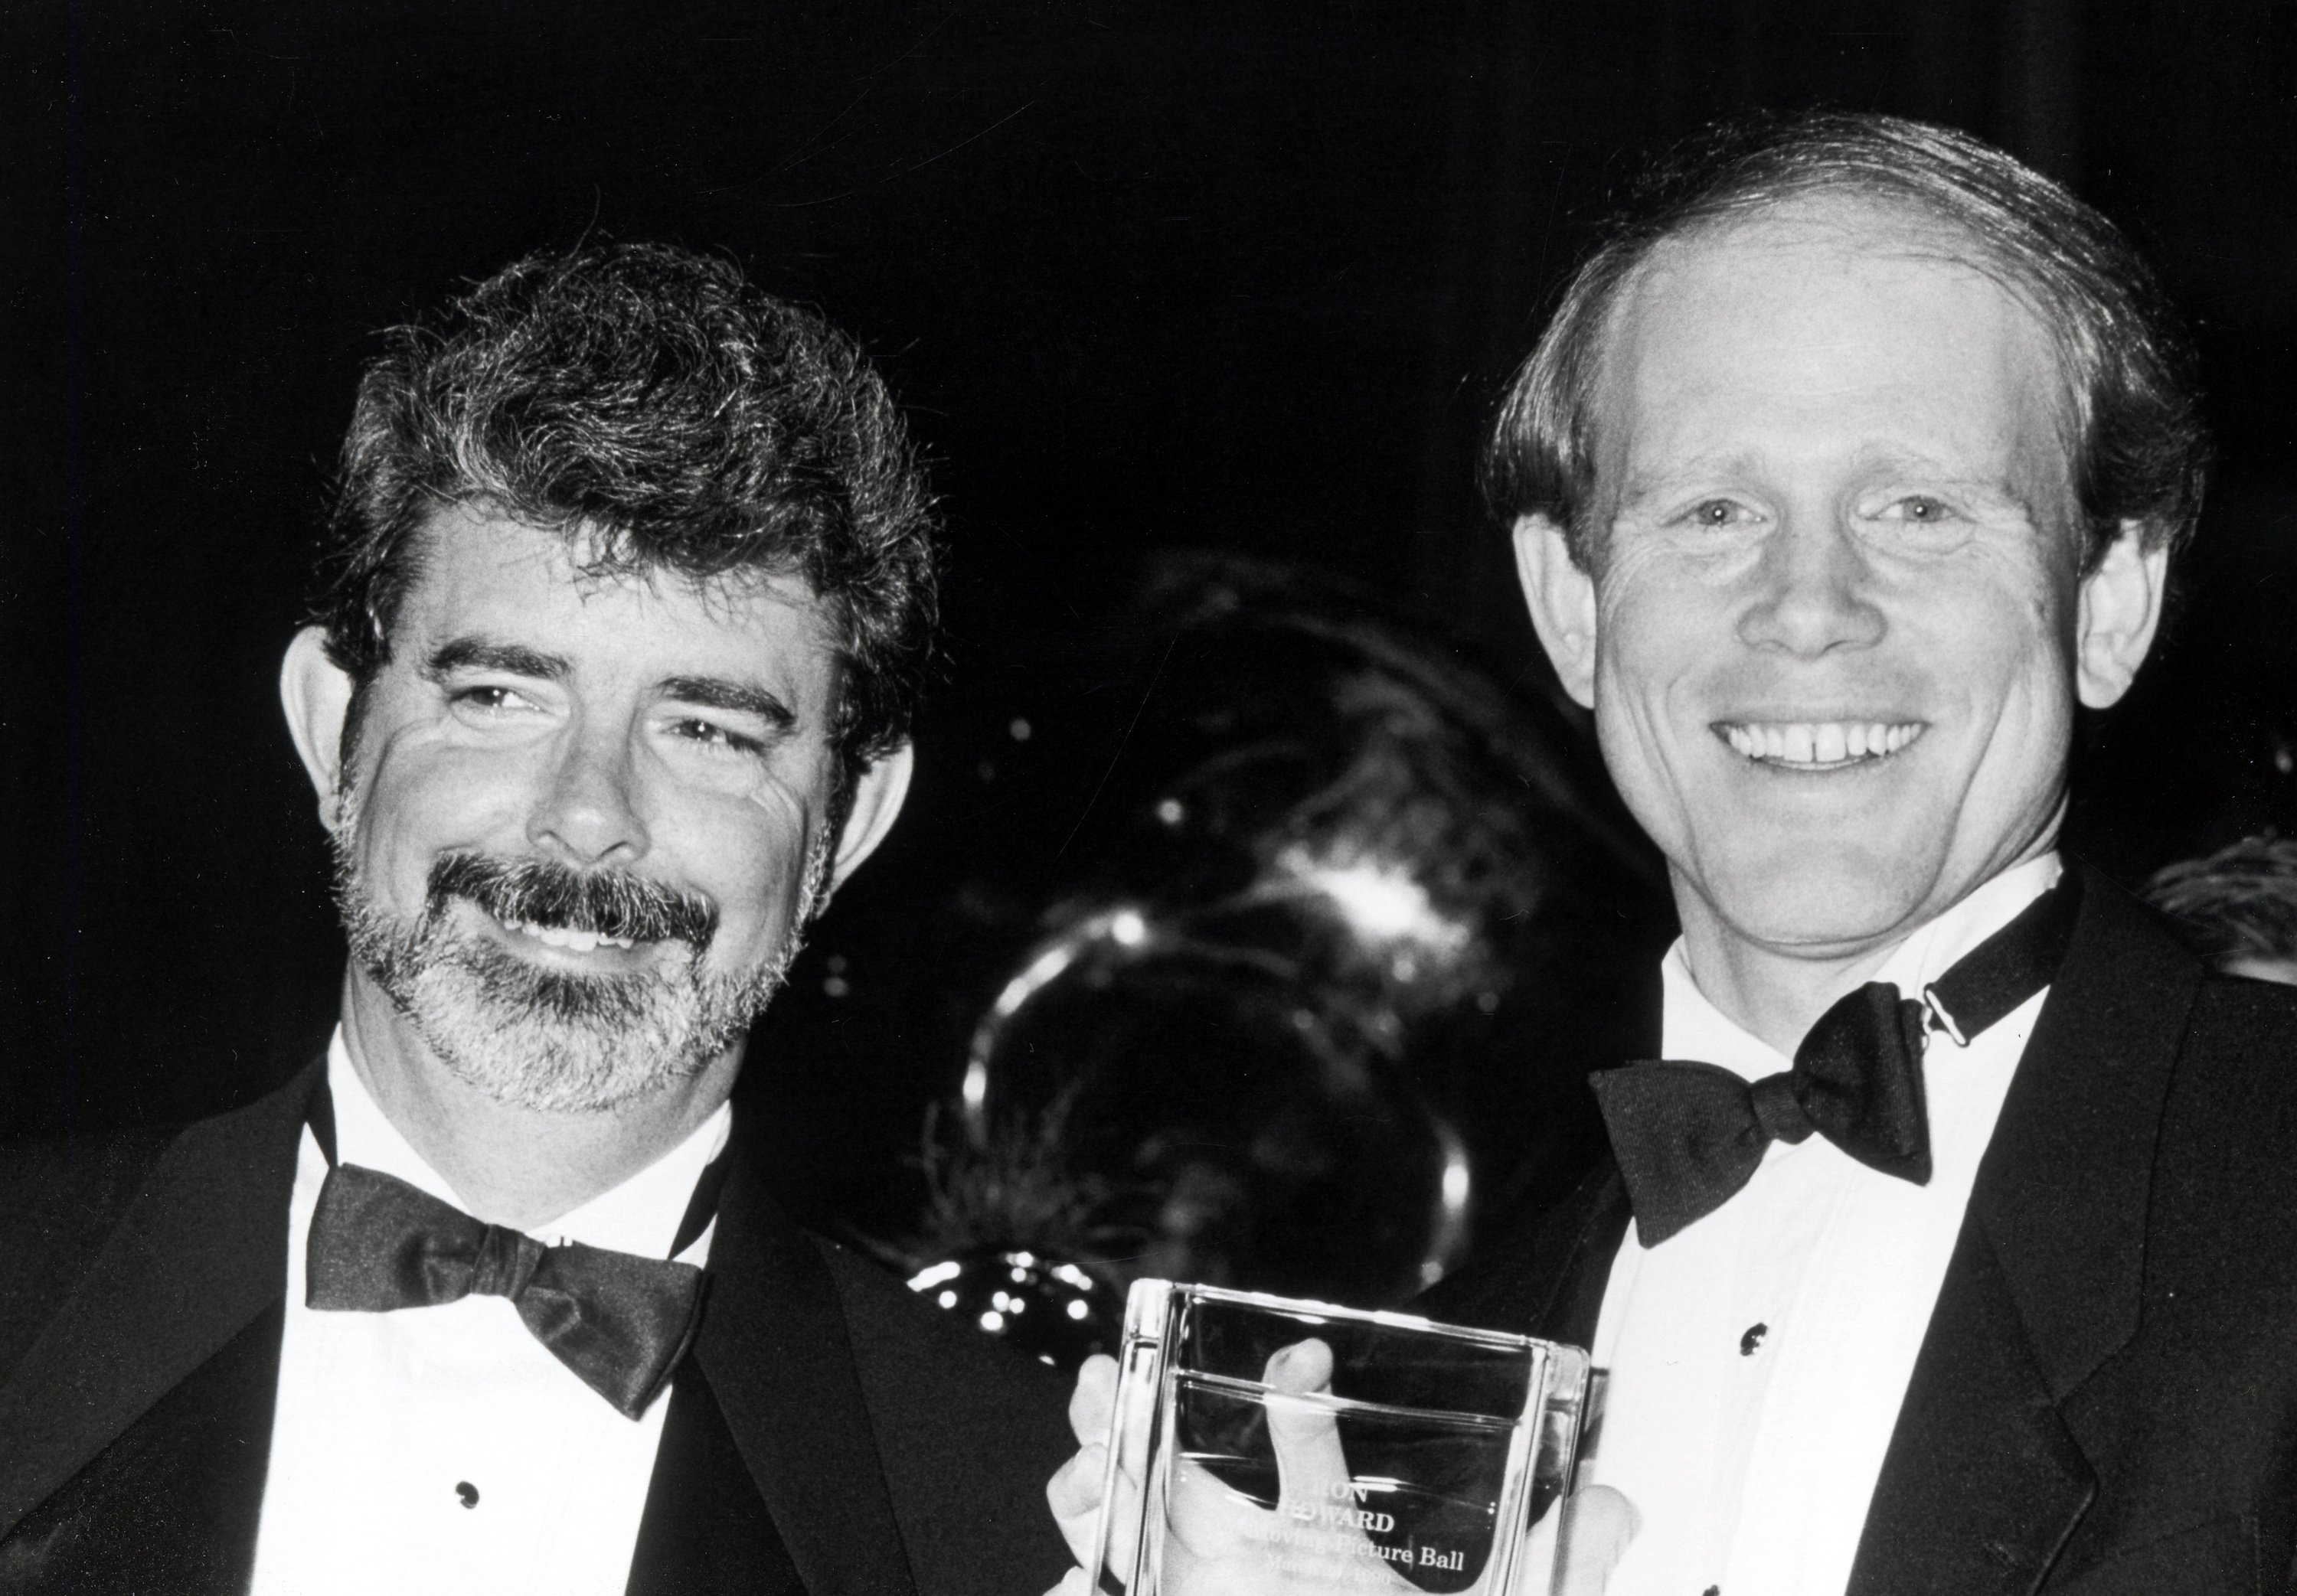 George Lucas and Ron Howard wearing ties